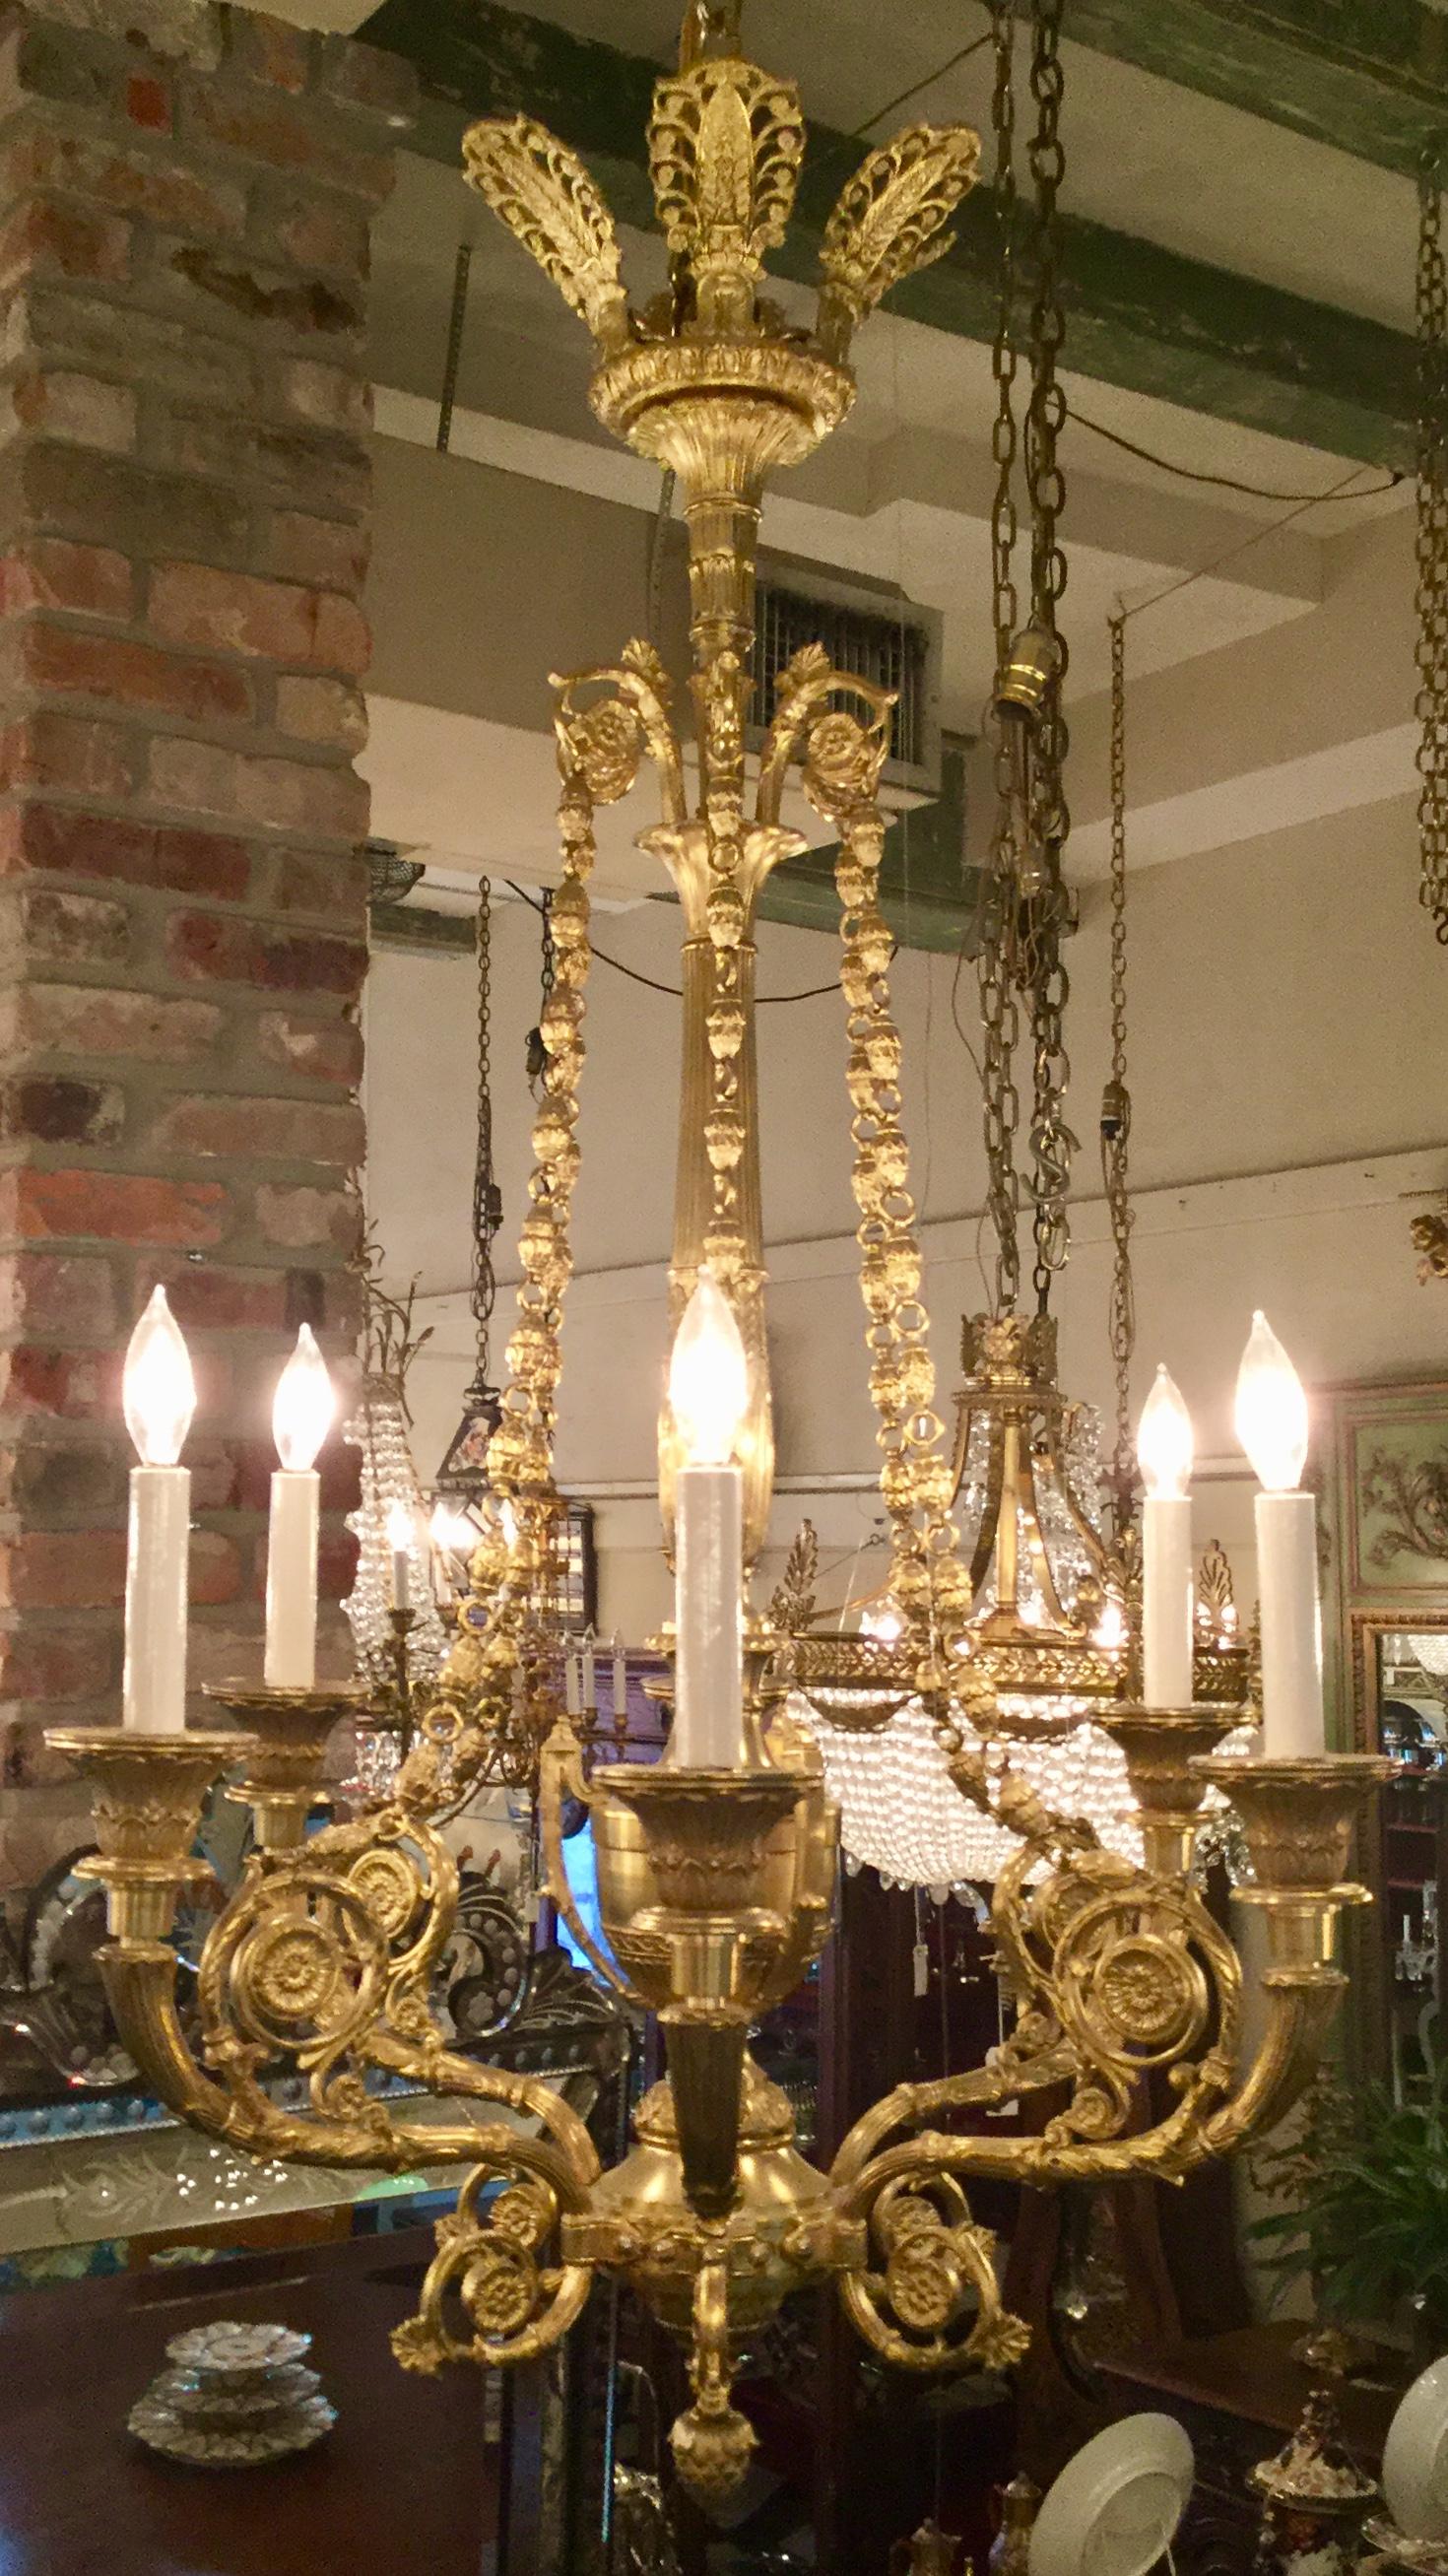 Finest quality antique bronze doré chandelier, circa 1840-1850.